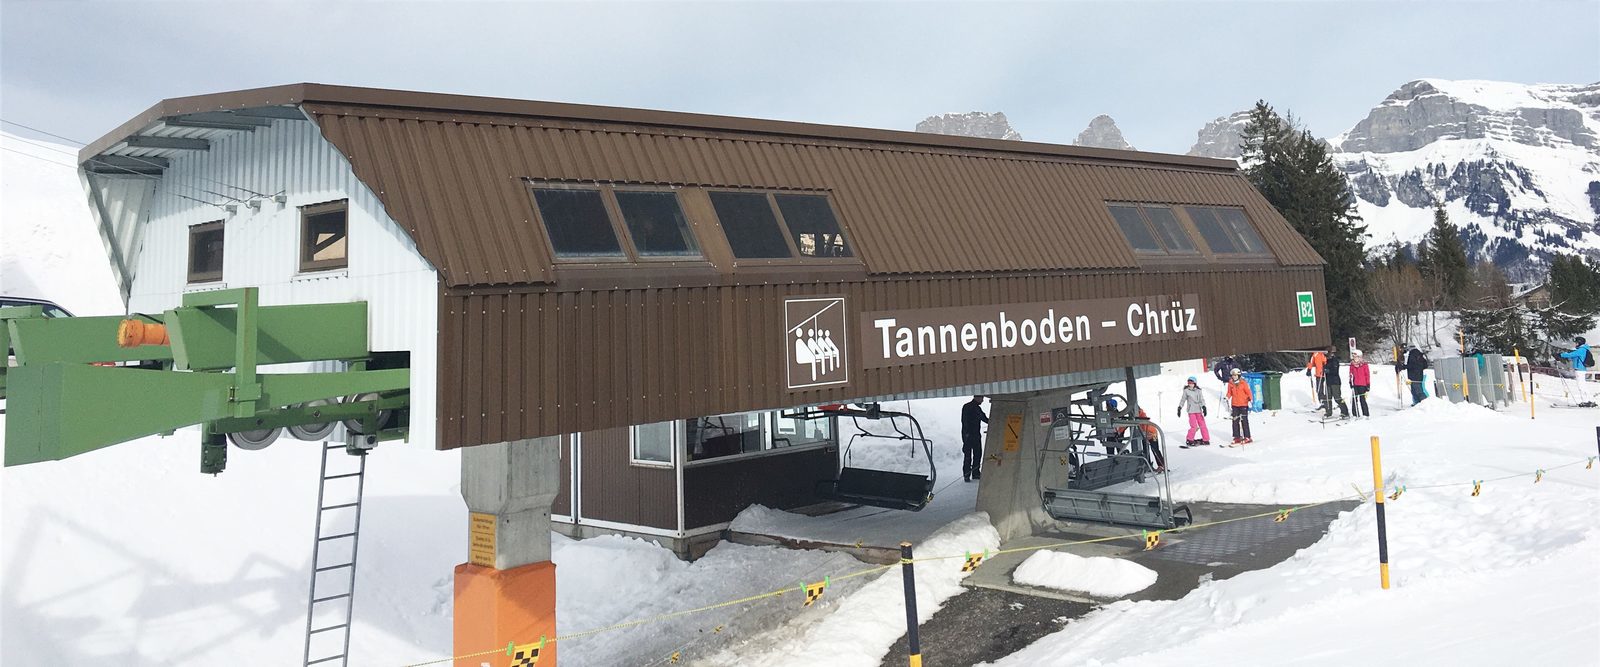 De Flumserberg bij Resort Walensee Zwitserland is een ideale wintersport locatie, sneeuwzeker gemakkelijk bereikbaar en geen massatoerisme